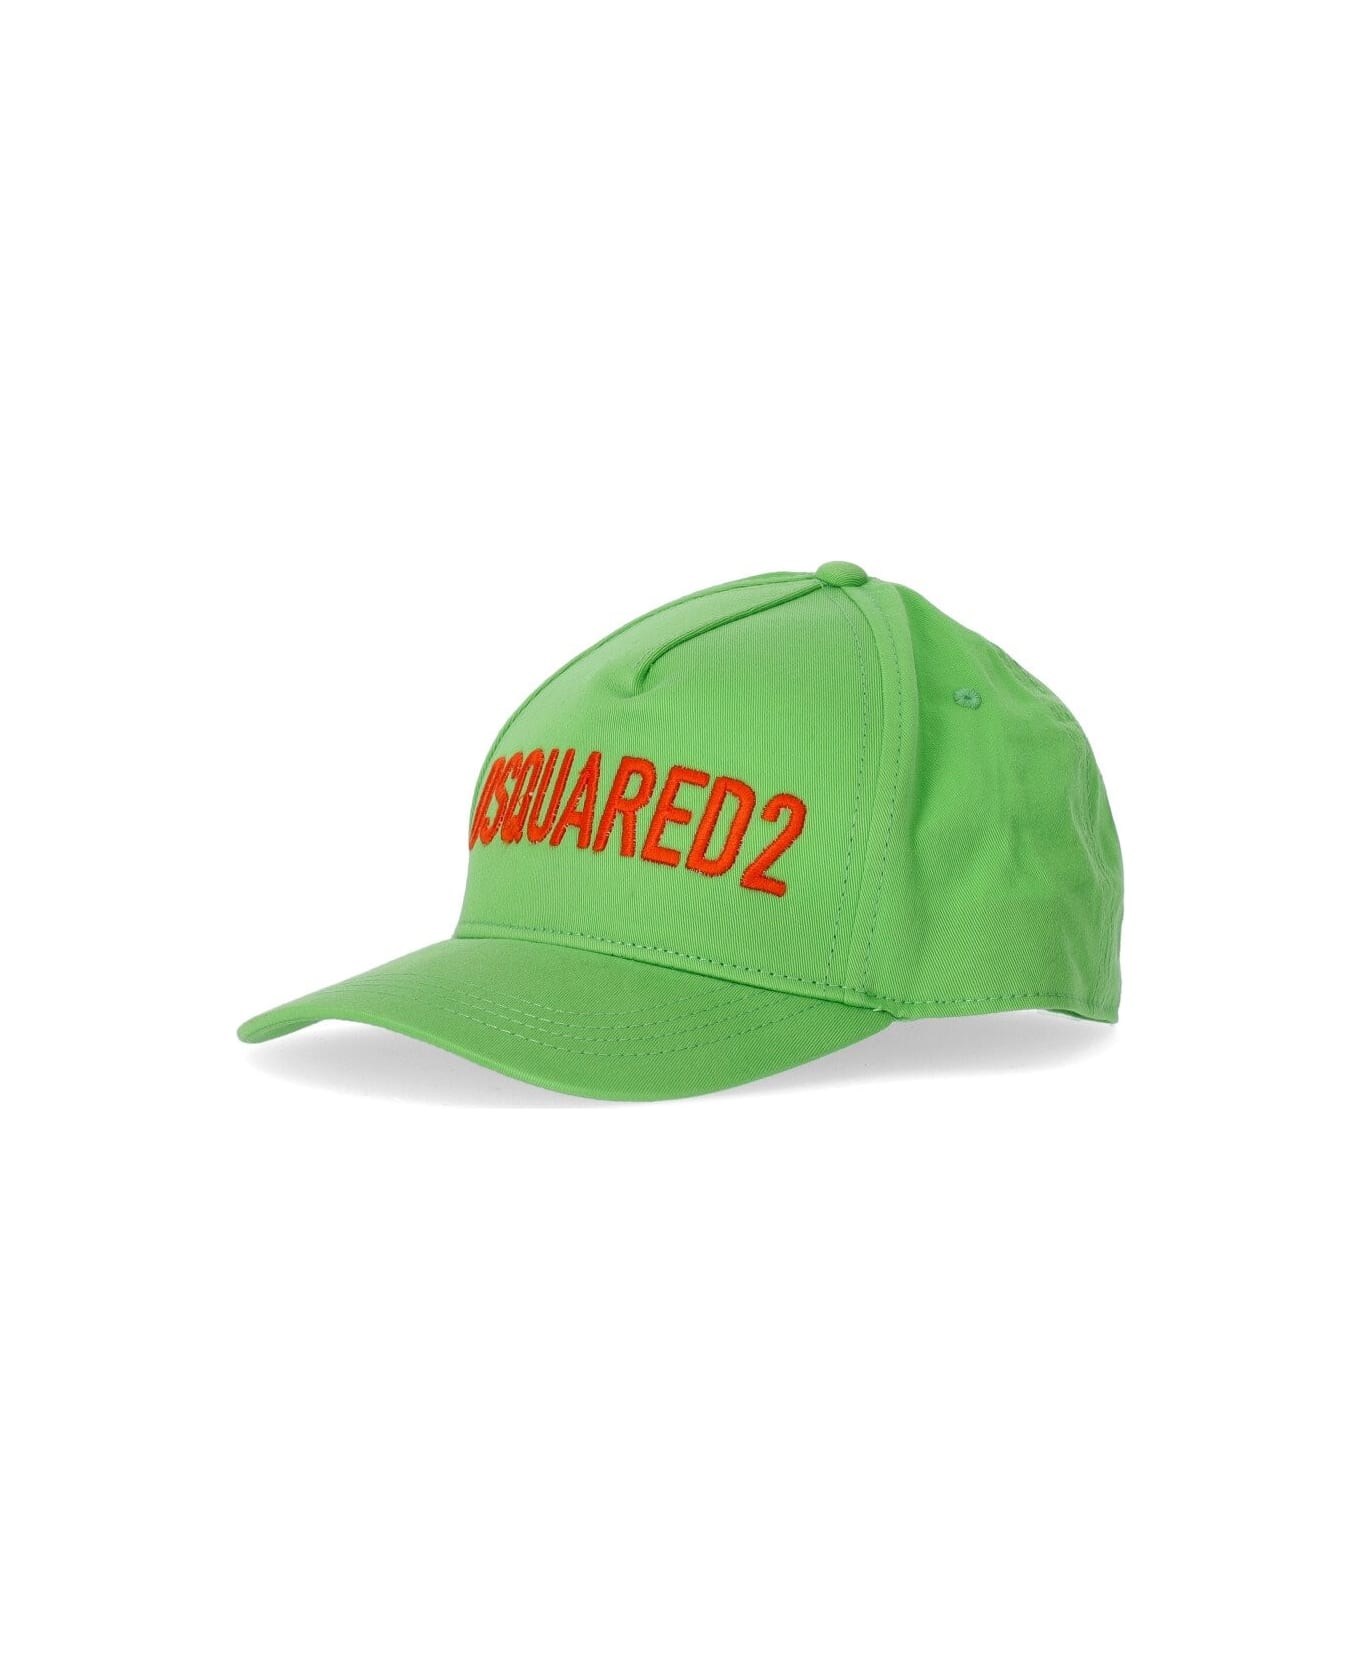 Dsquared2 Technicolor Acid Green Baseball Cap - Verde 帽子